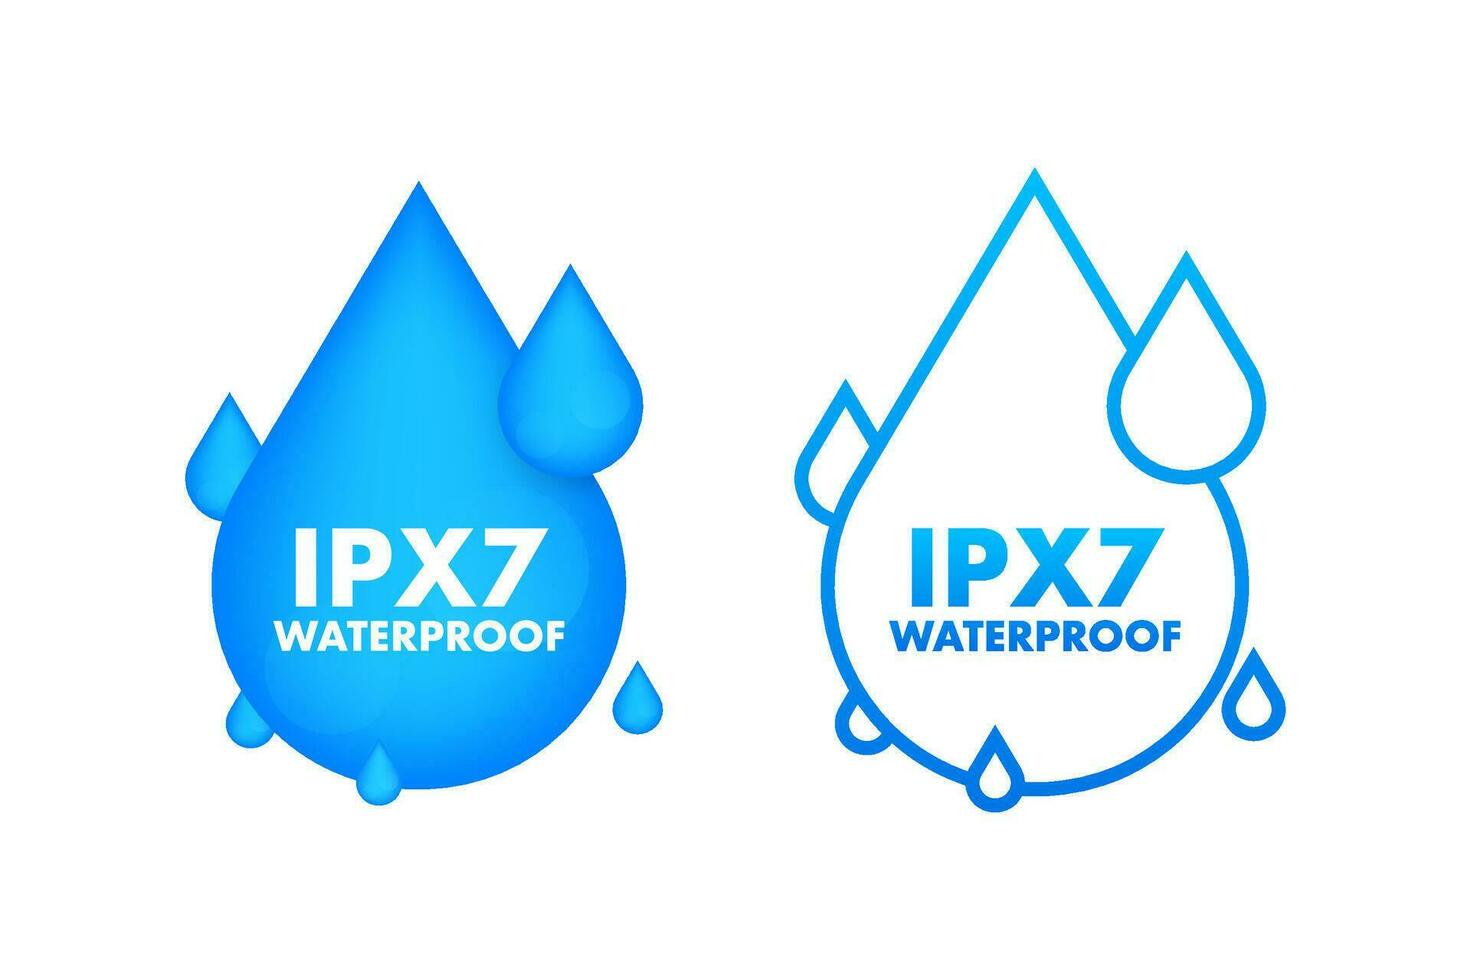 ipx7 wasserdicht, Wasser Widerstand Niveau Information unterzeichnen. vektor